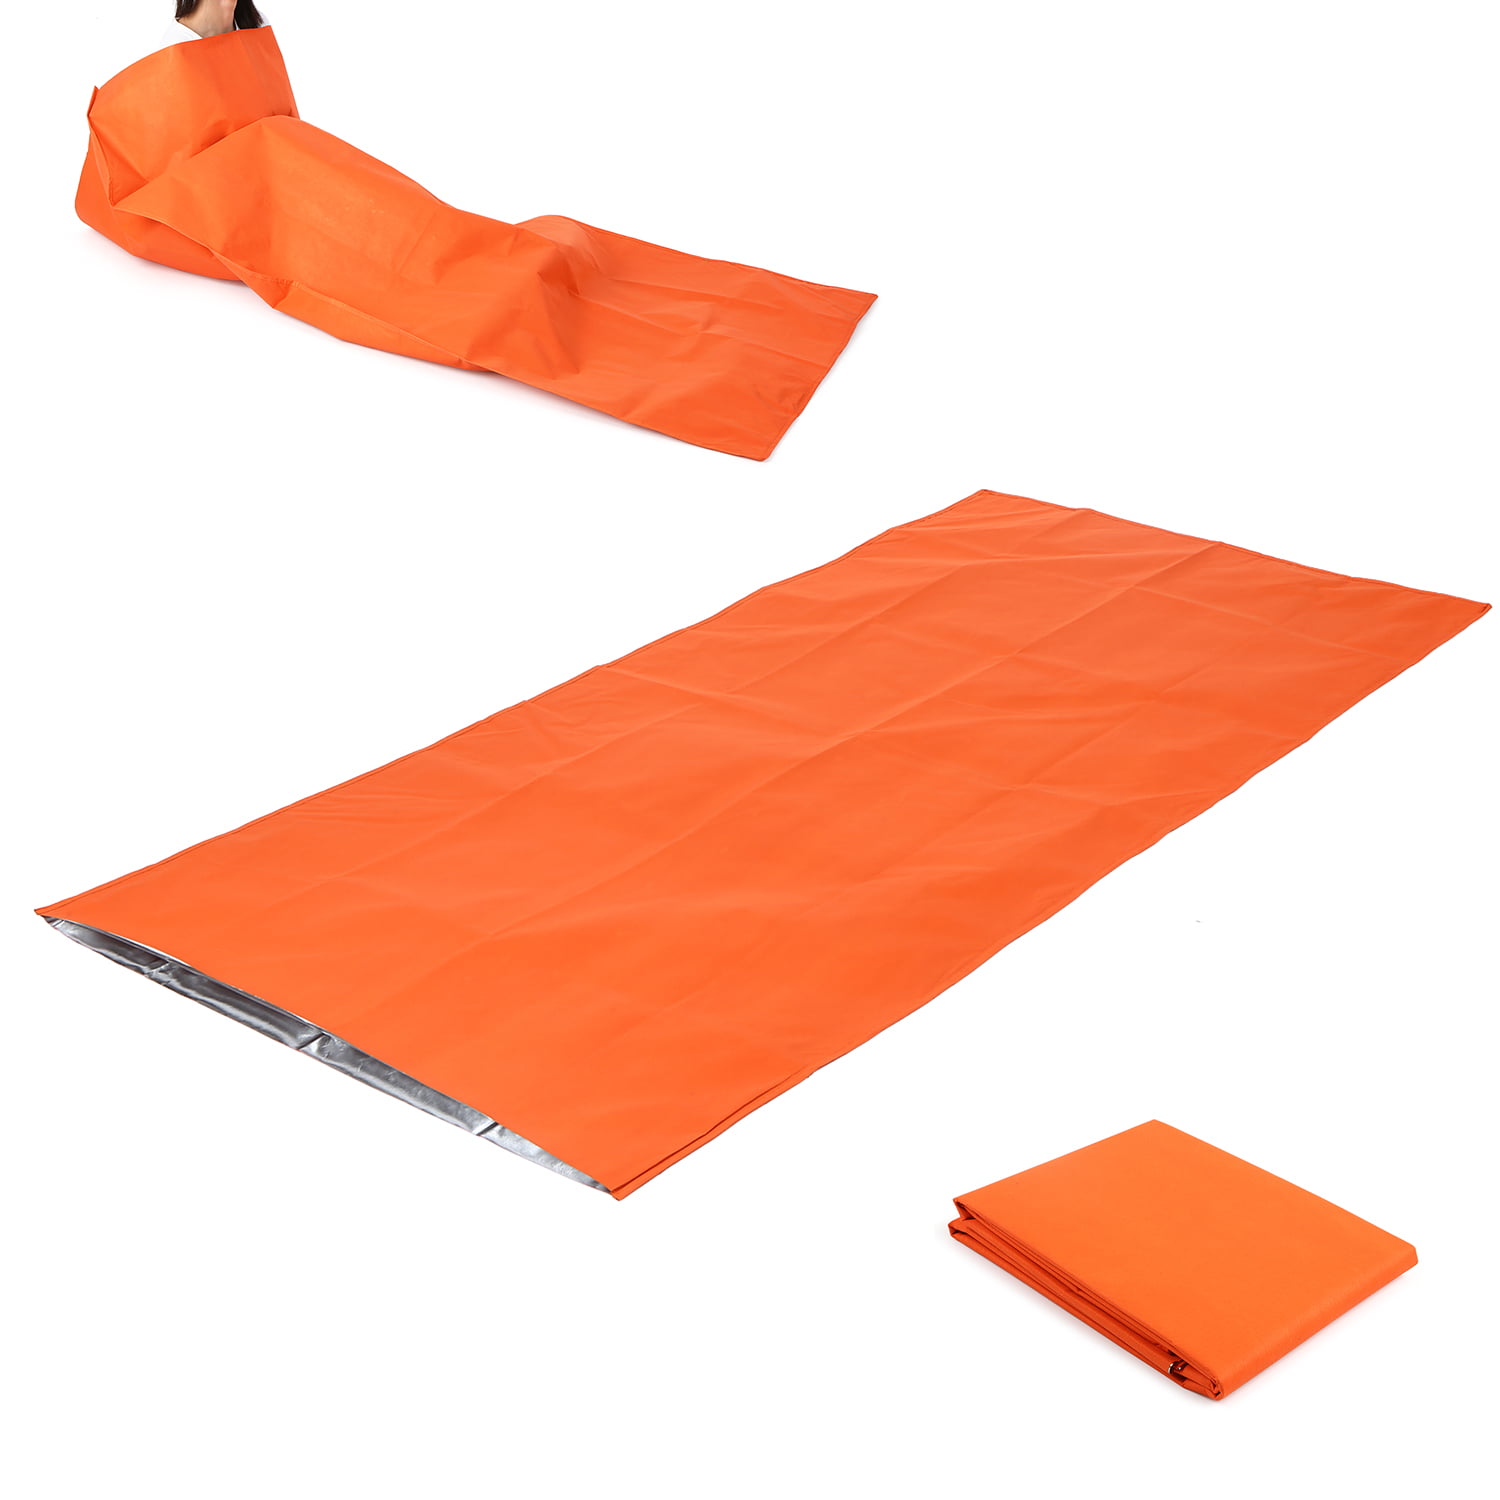 Portable outdoor Emergency waterproof sleeping bag camping supervivencia bivhaw 8y 